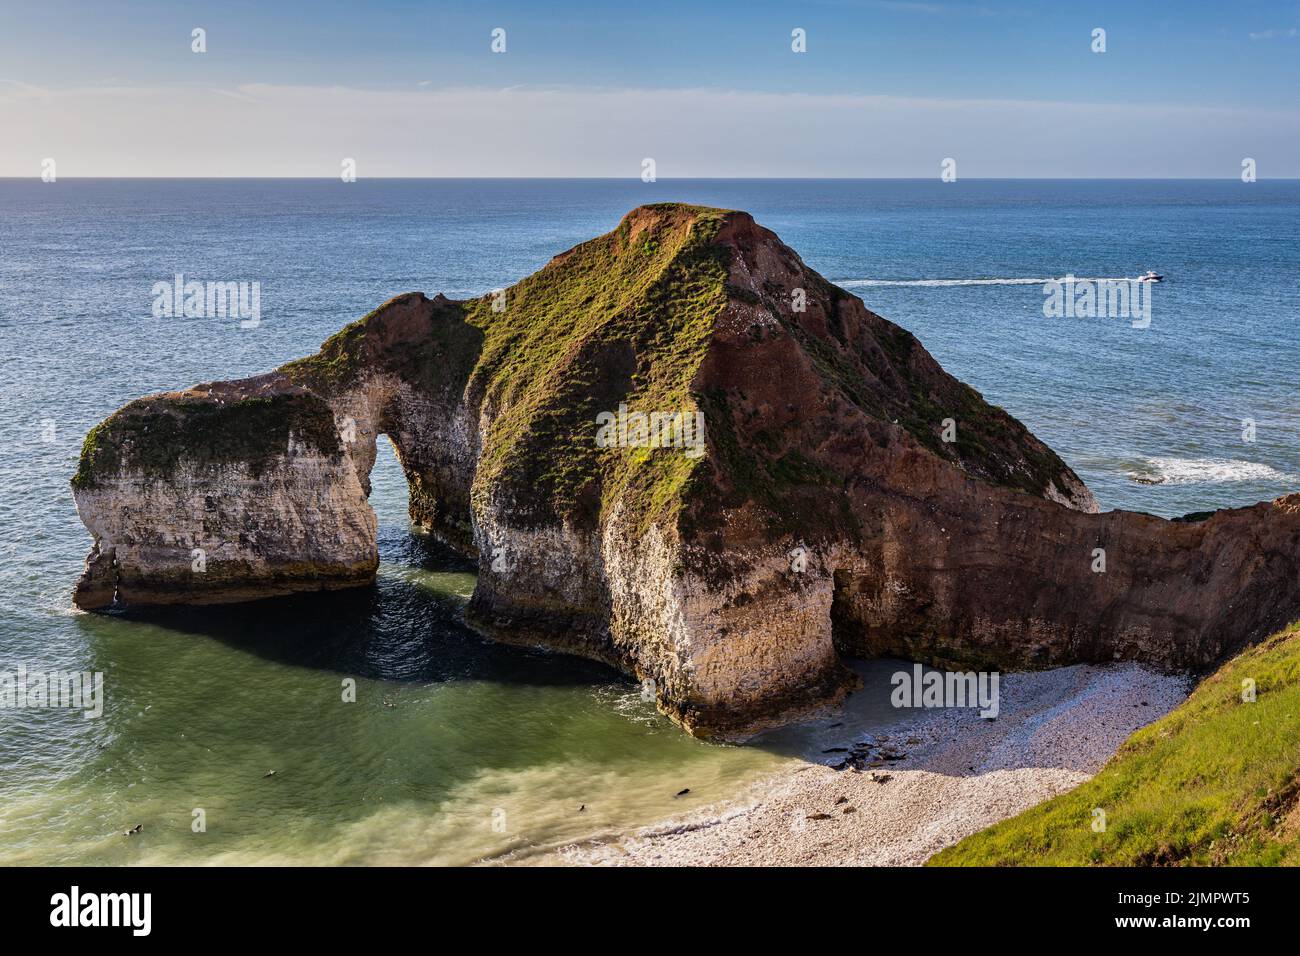 Formation de roches calcaires connue sous le nom de Drinking Dinosaur, Flamborough Head, East Yorkshire Coast. Une colonie de phoques gris peut être vue sur la plage ci-dessous Banque D'Images